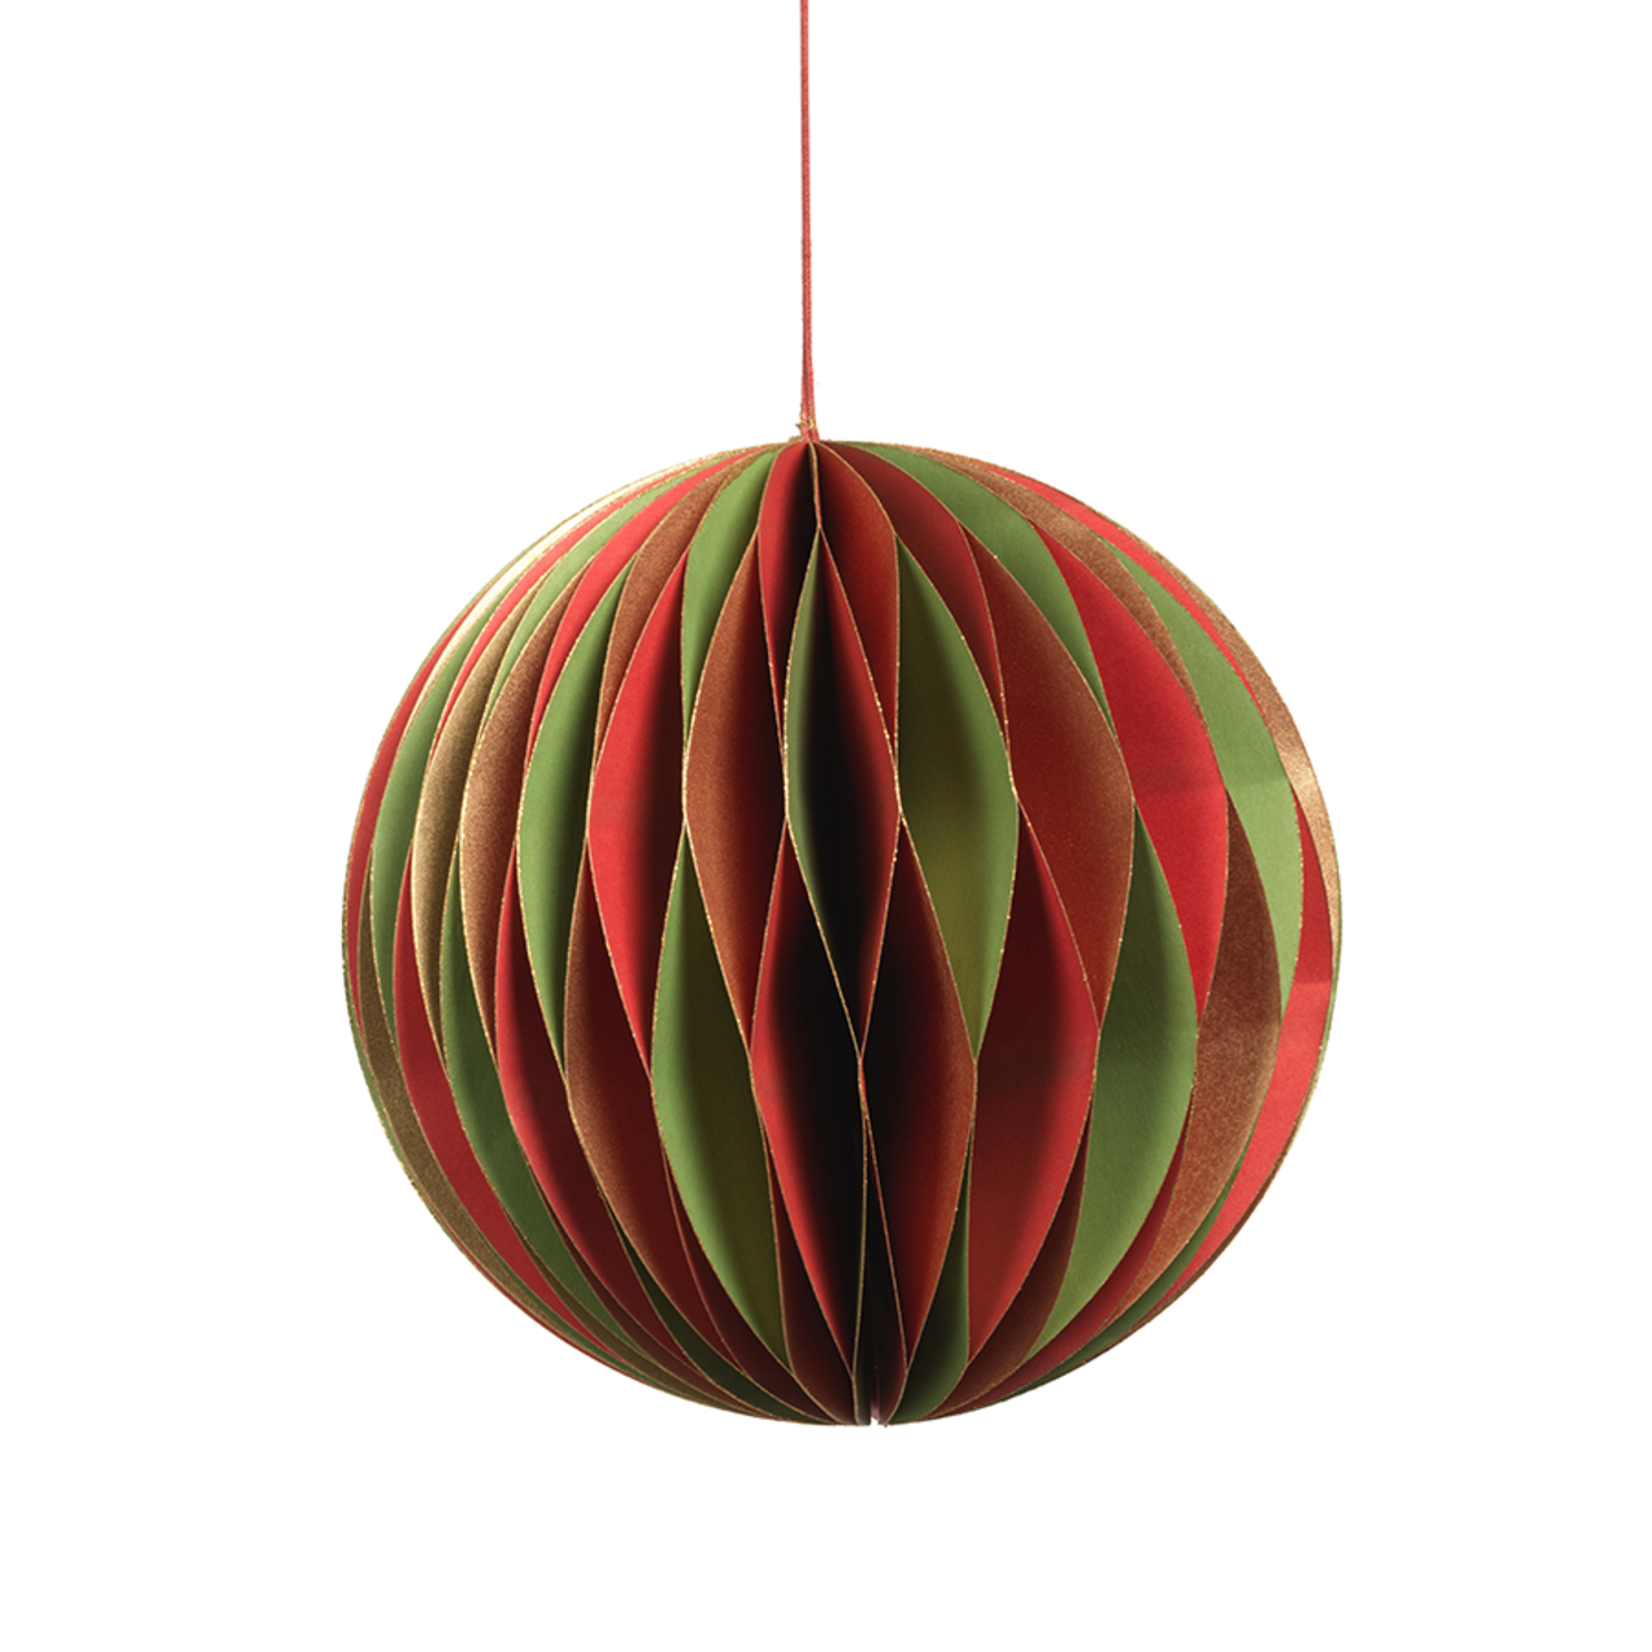 Zodax Ornament Wish Paper Deco 7" Ball